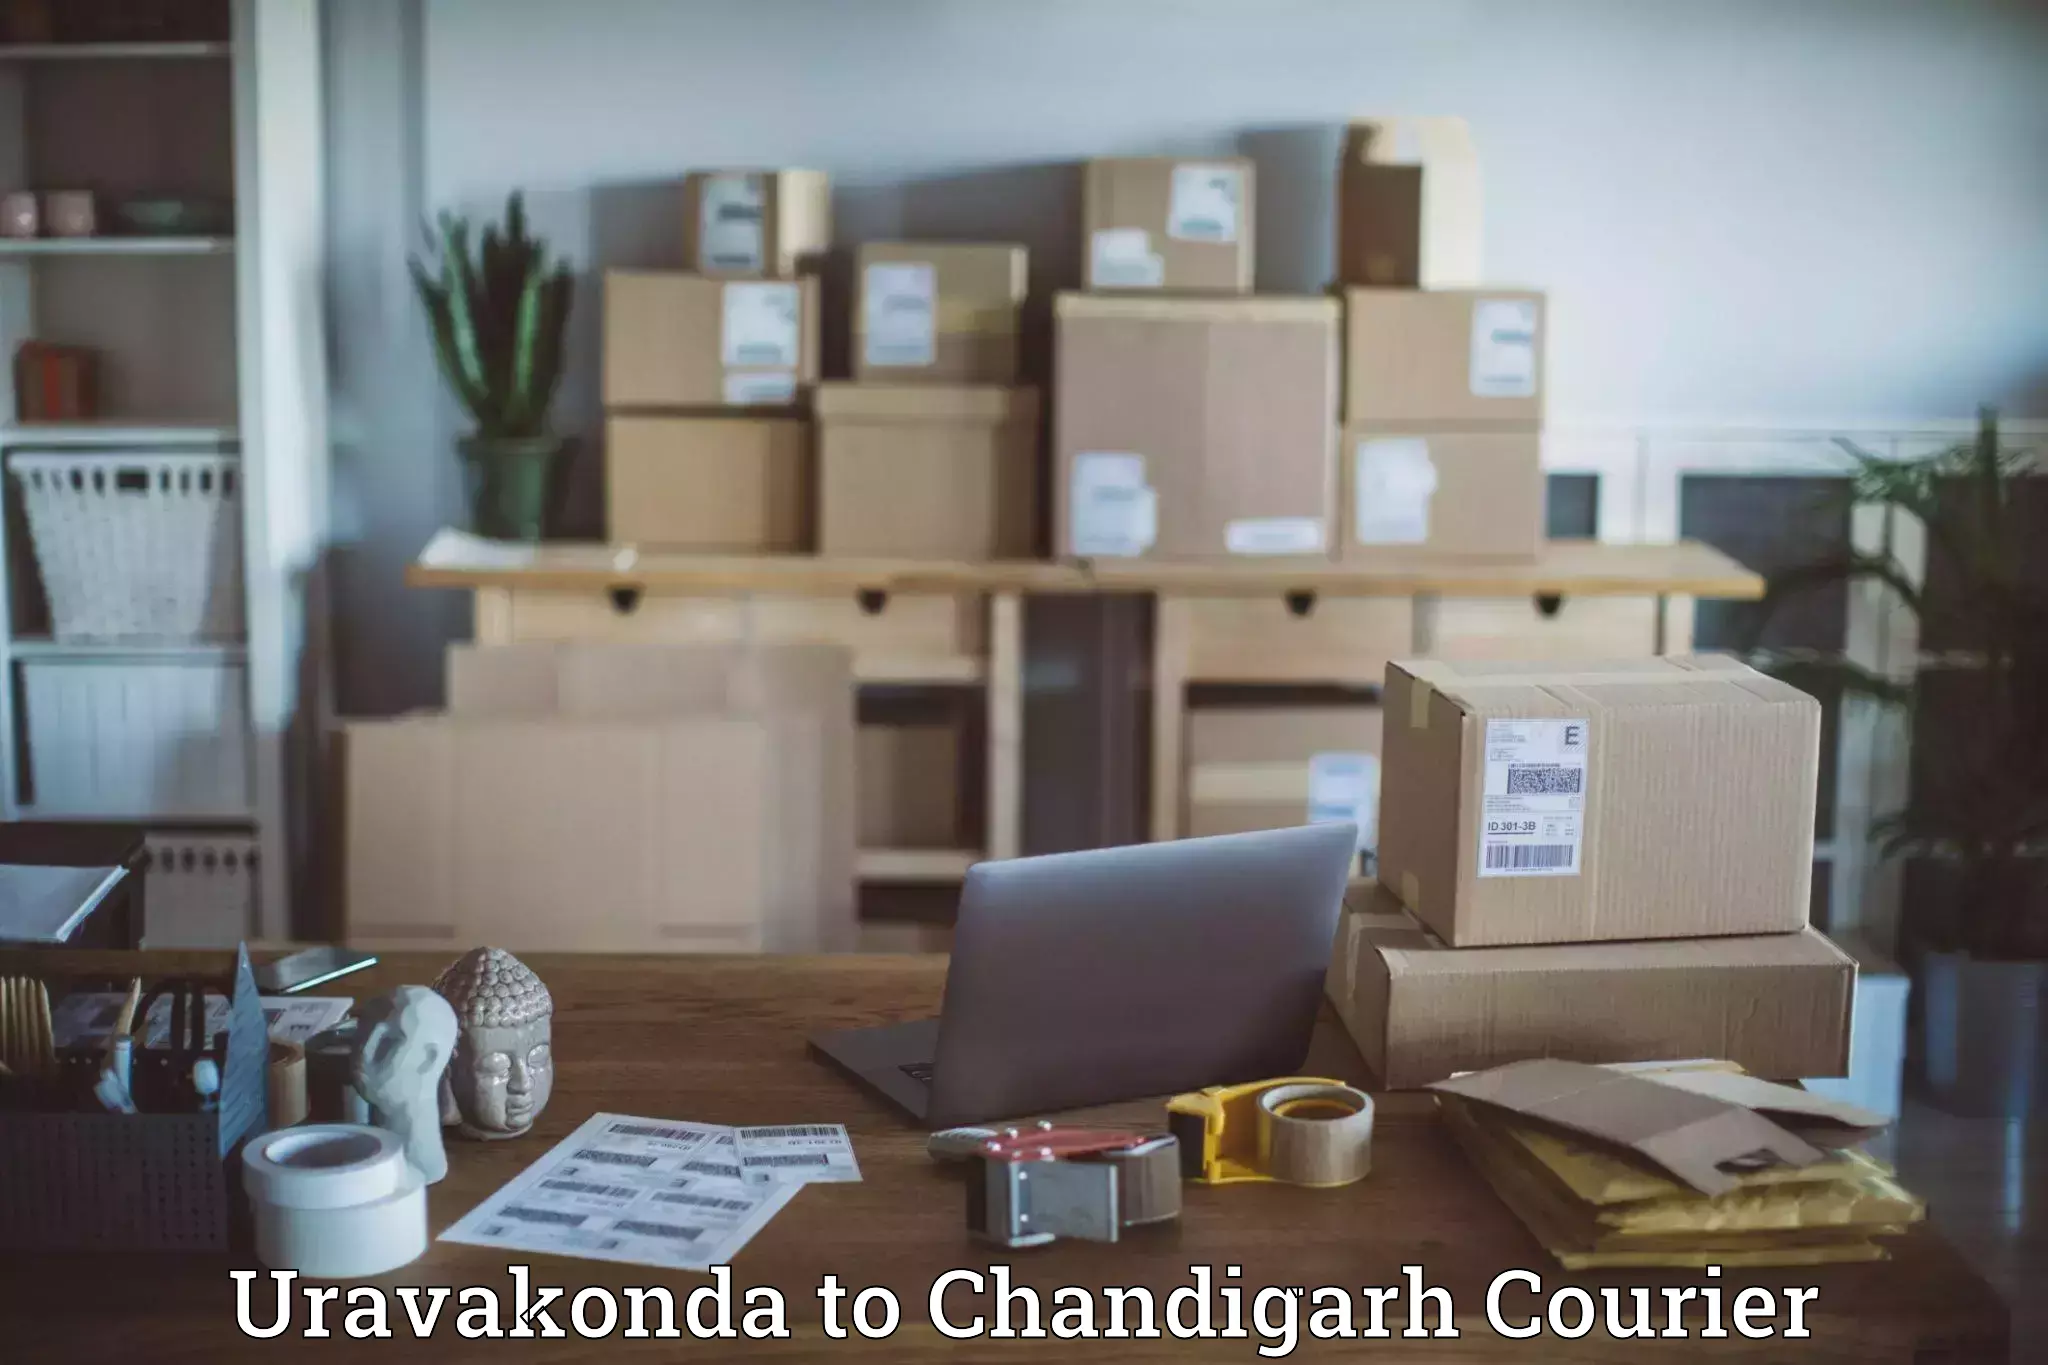 Customer-focused courier Uravakonda to Chandigarh